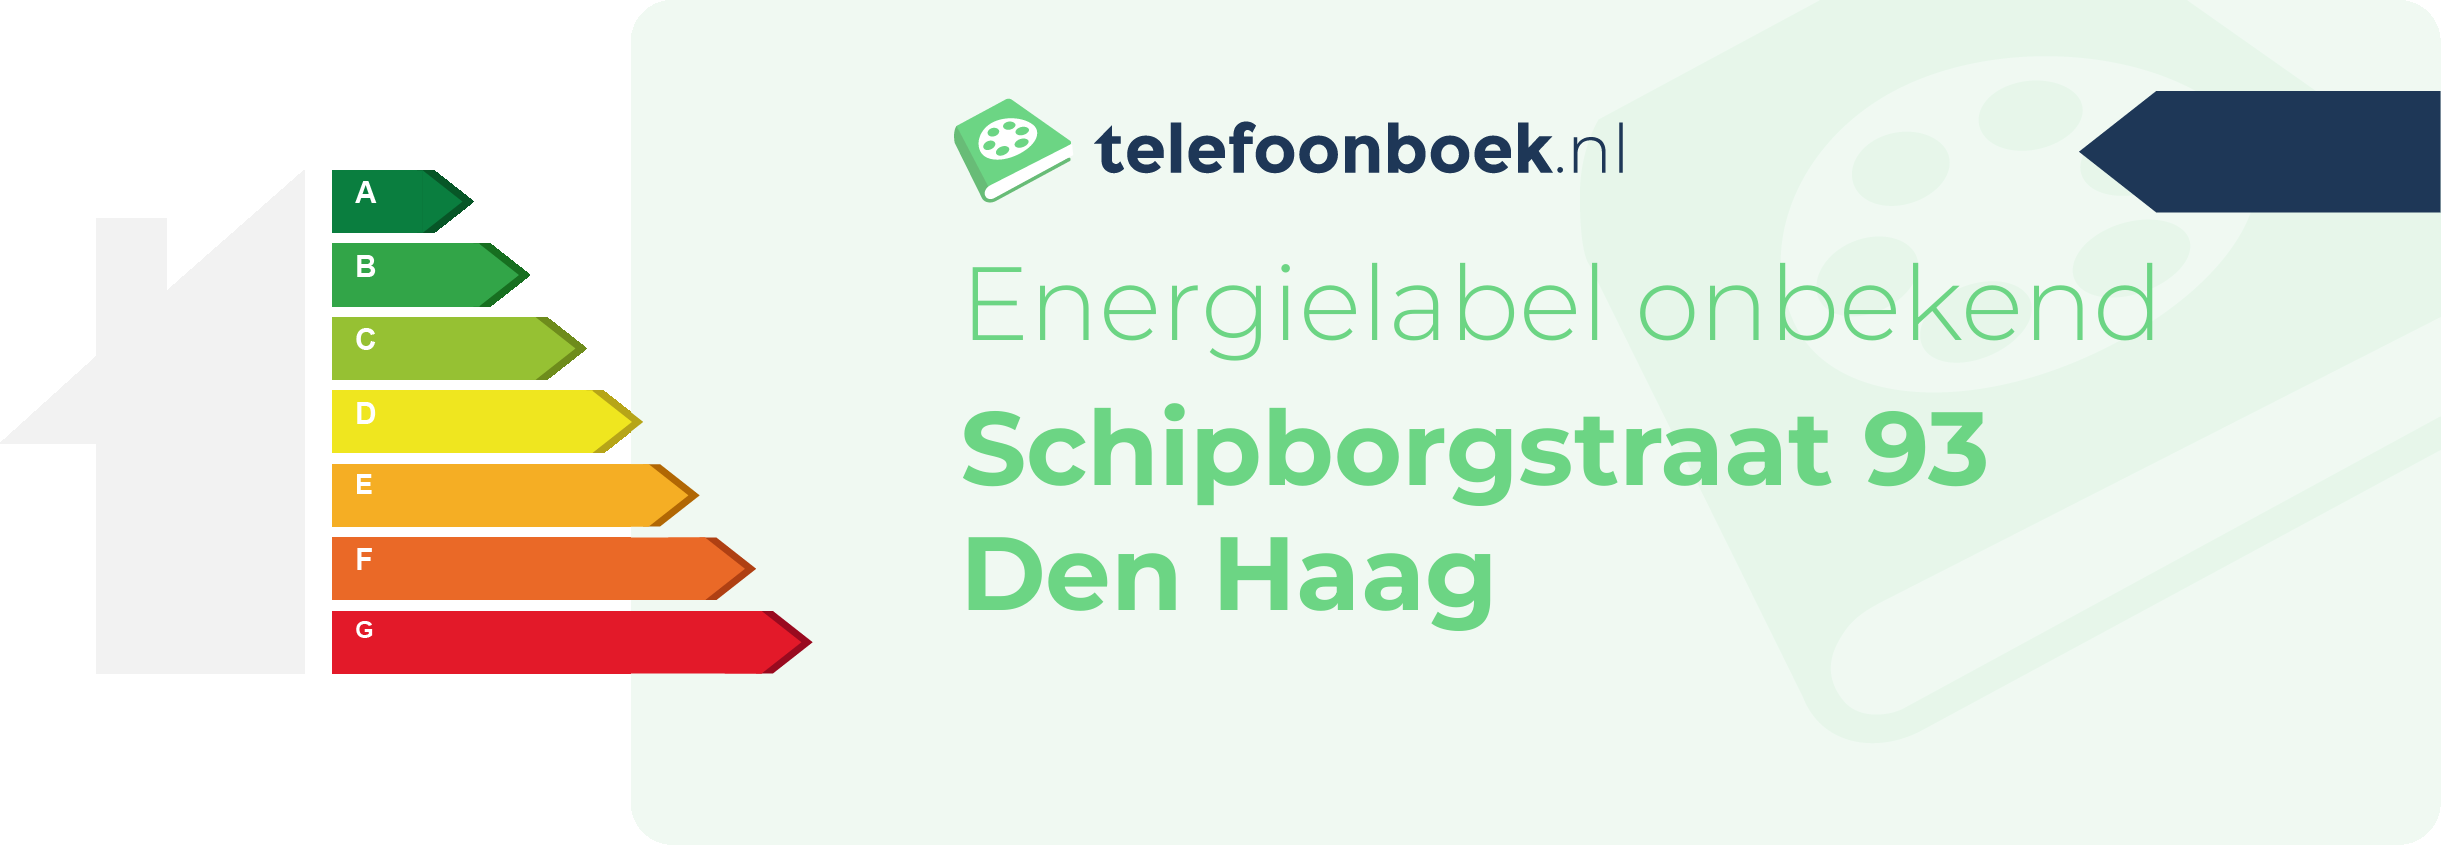 Energielabel Schipborgstraat 93 Den Haag